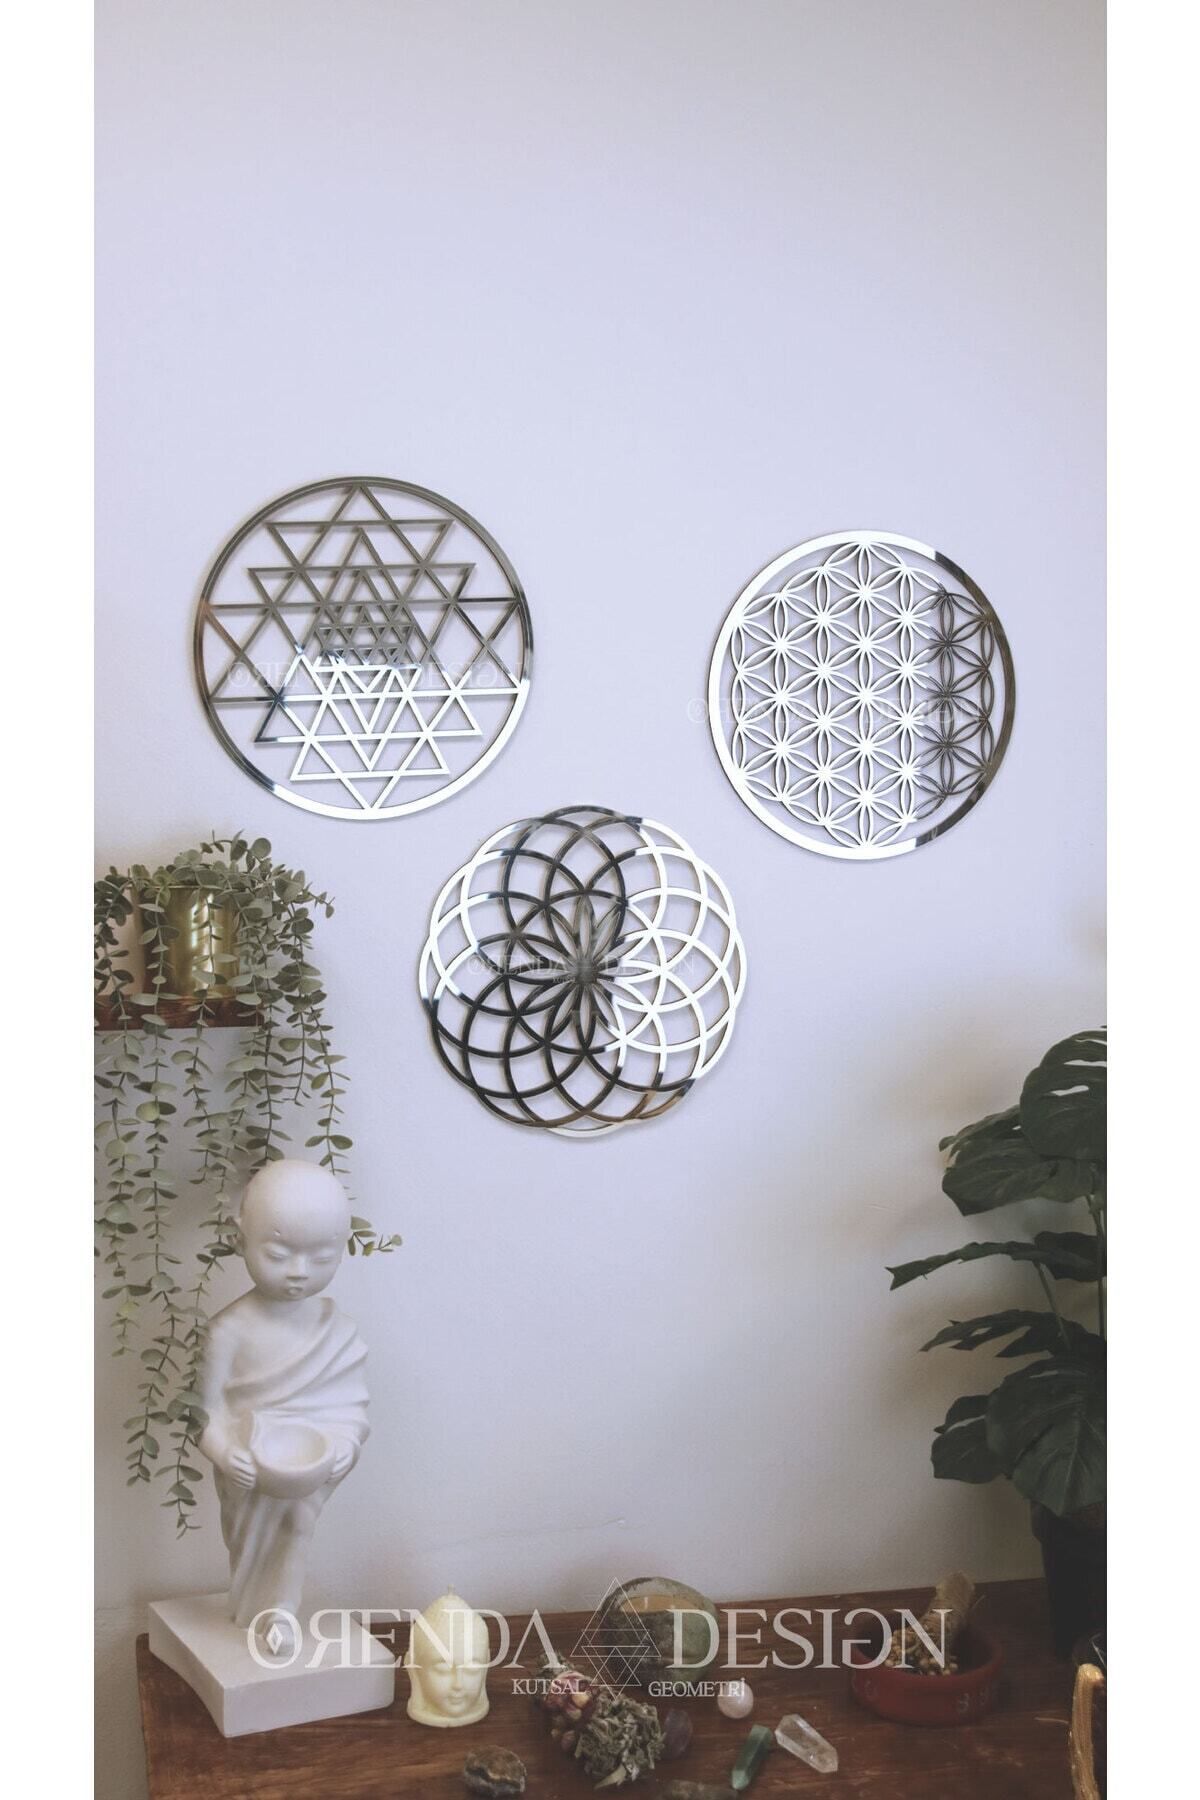 Orenda Design Kutsal Geometri Yaşam Çiçeği - Torus - Sri Yantra 3'lü Dönüşüm seti (Gümüş)